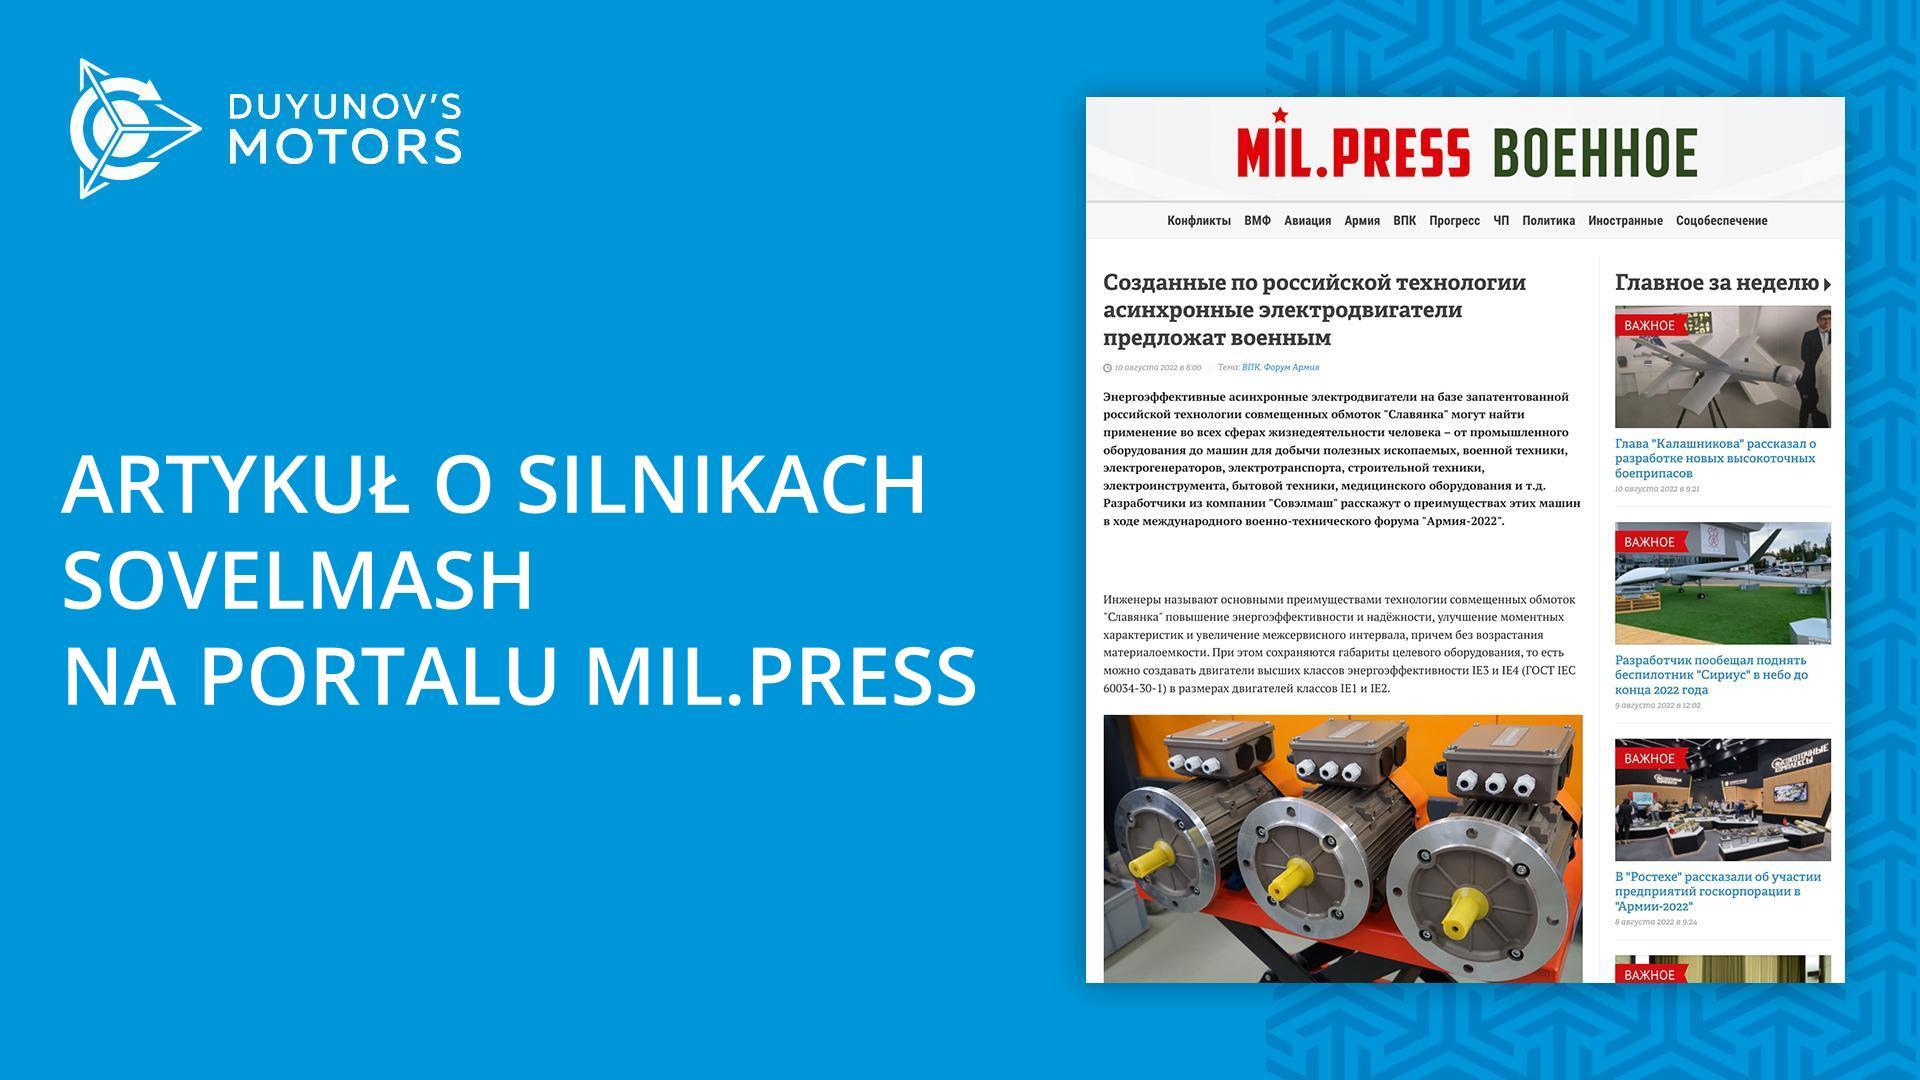 Nowy artykuł o silnikach Sovelmash w Mil.Press Wojskowy